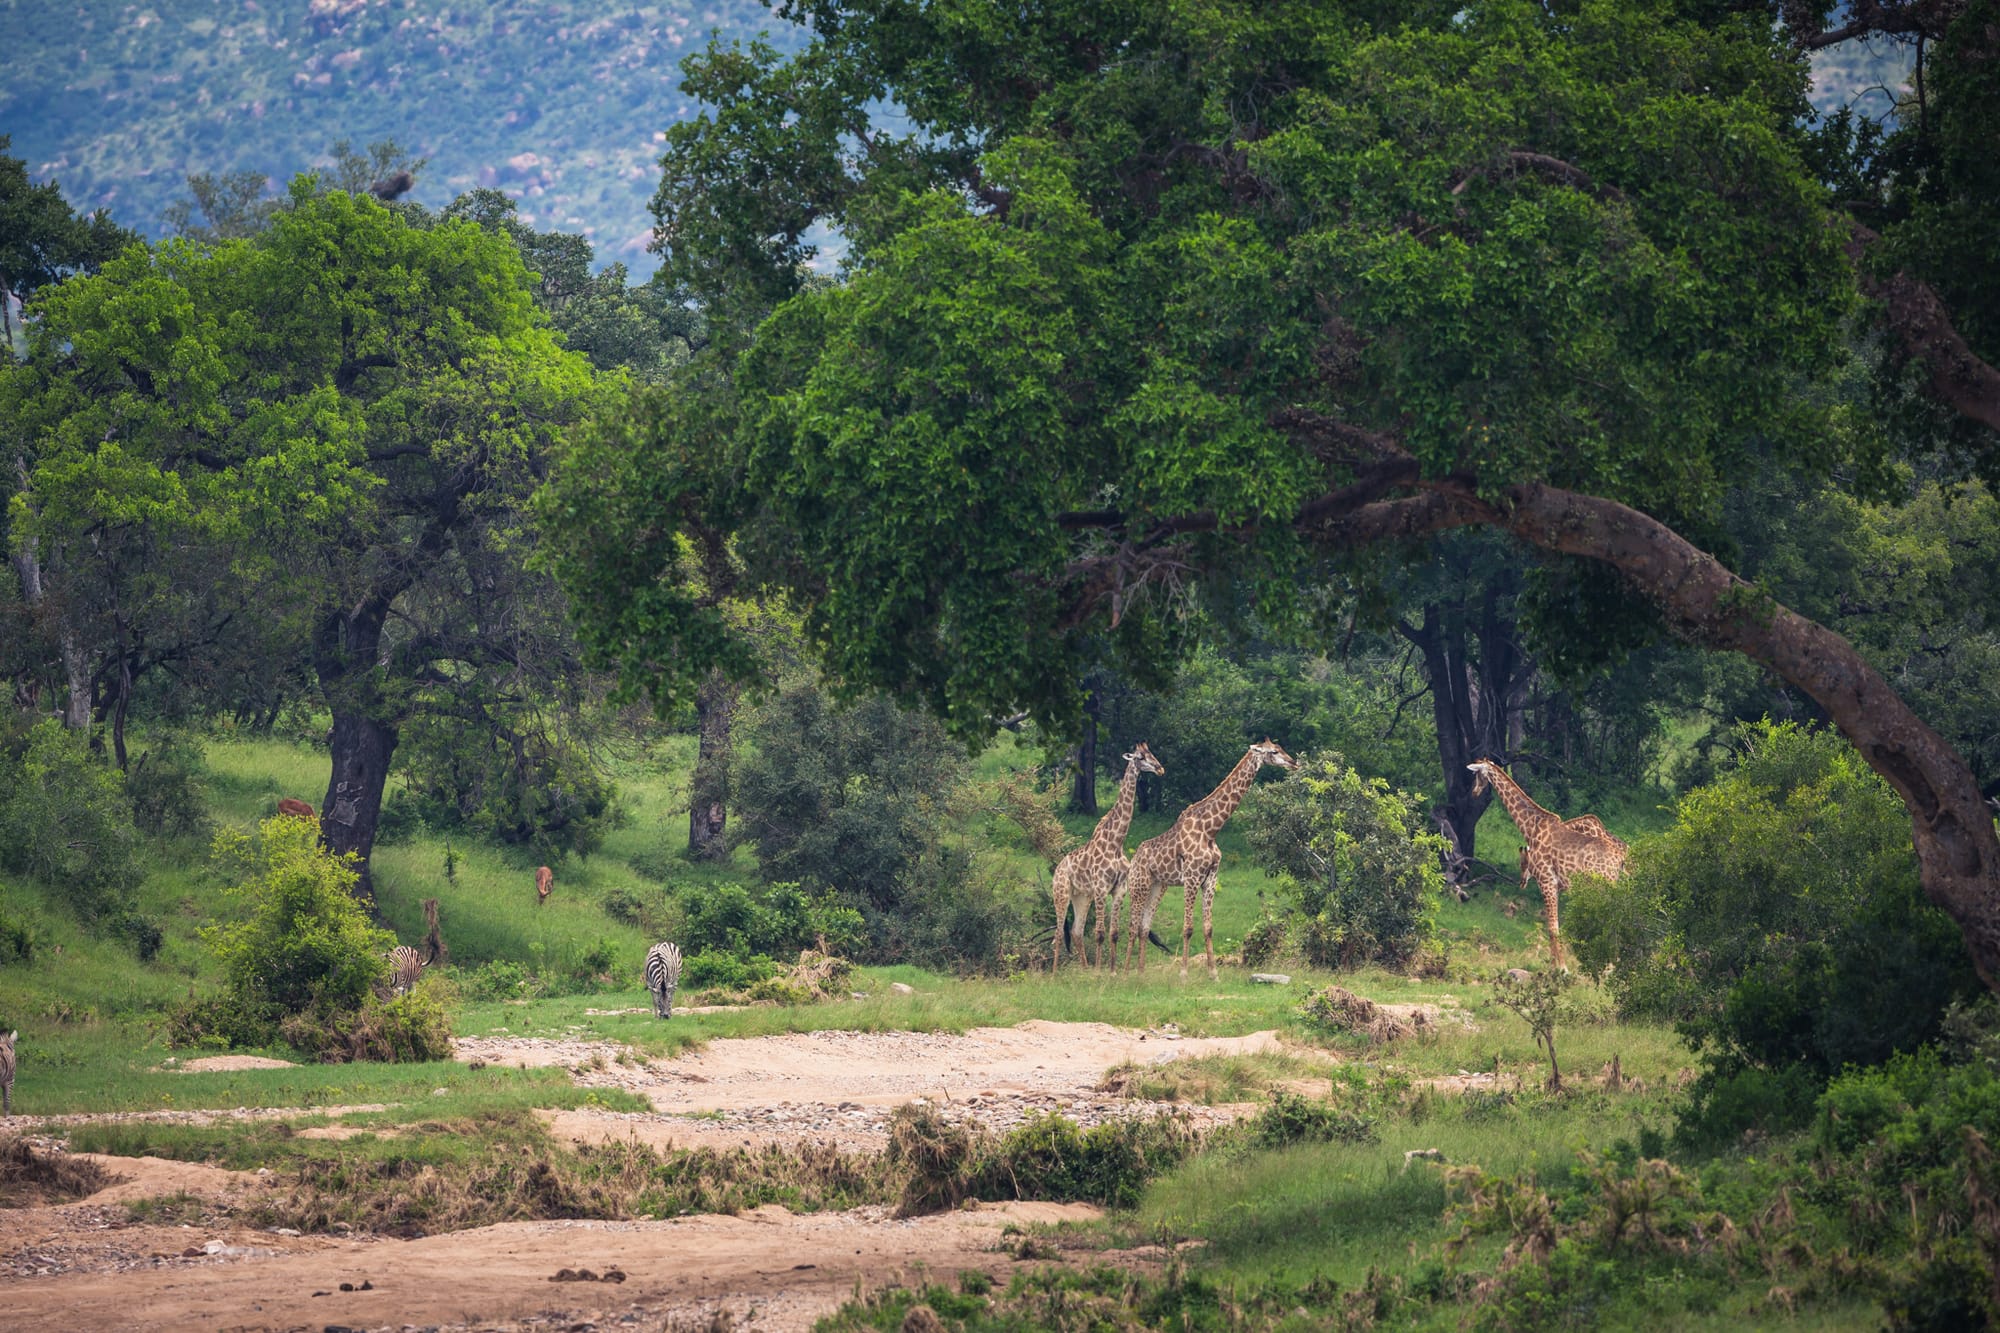 Kruger National Park 2023